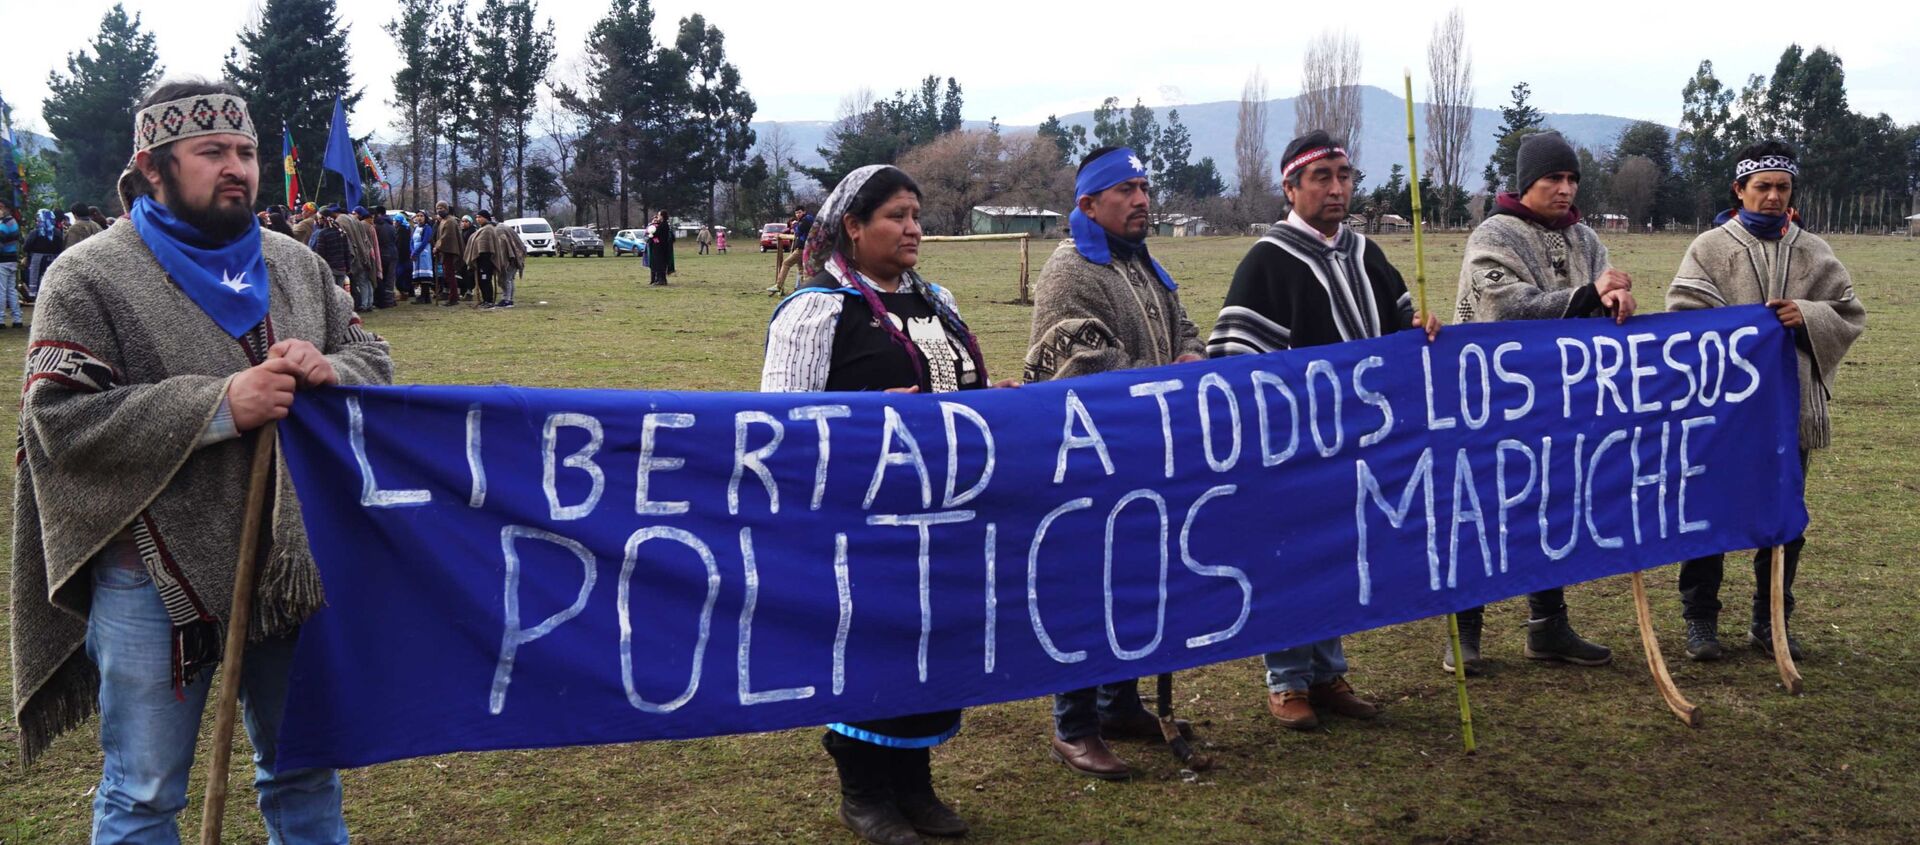 Pedido de libertad a los presos políticos mapuche - Sputnik Mundo, 1920, 11.08.2020